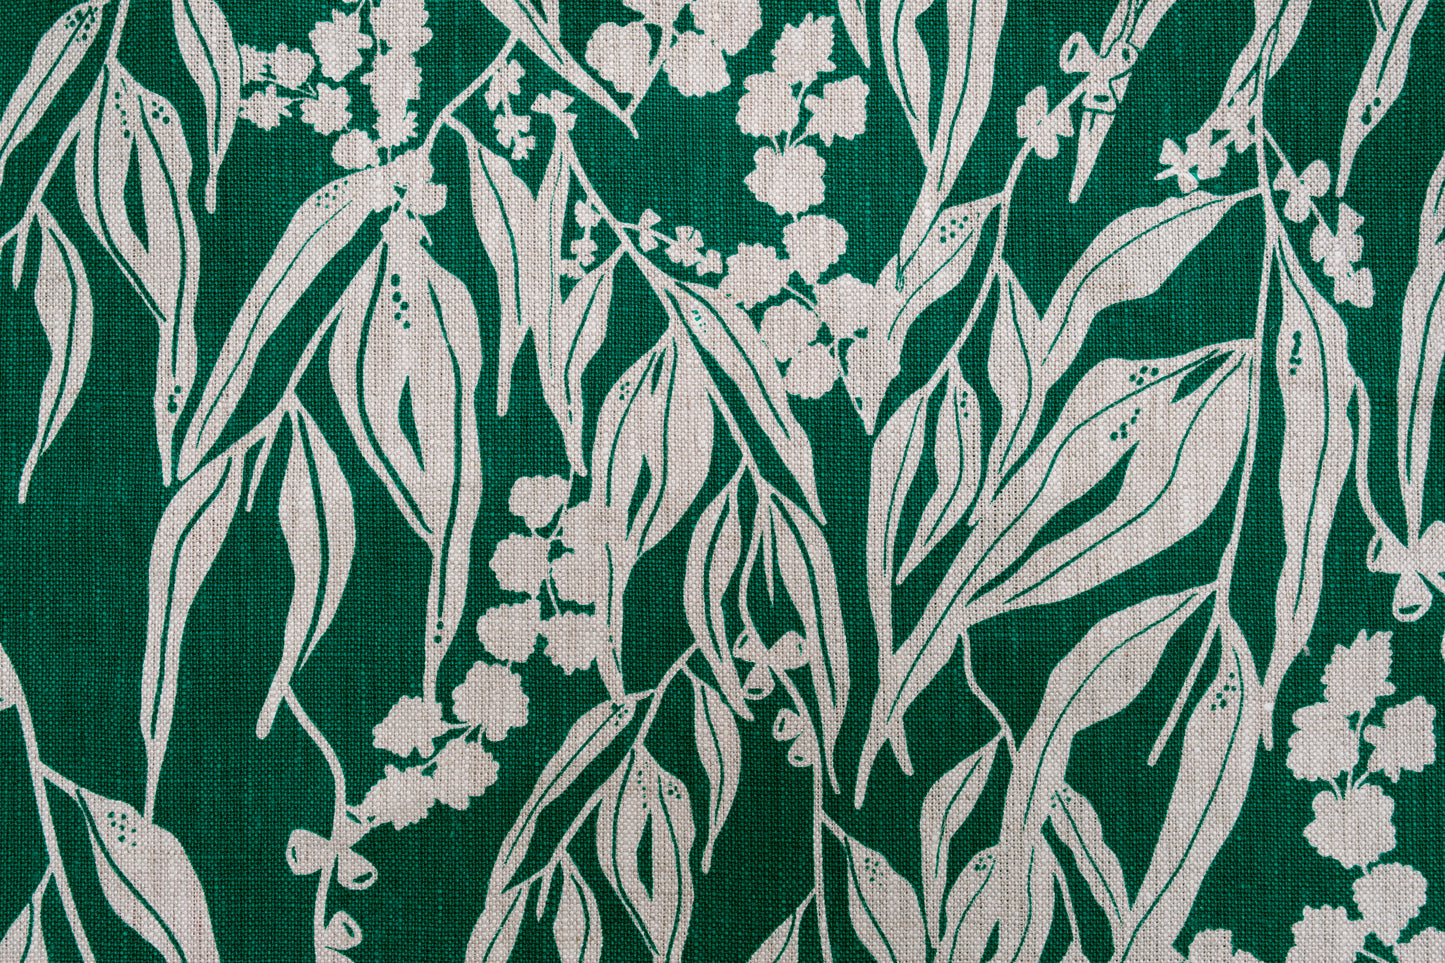 Linen Fabric - Nuts about Wattle in Verde on oatmeal linen